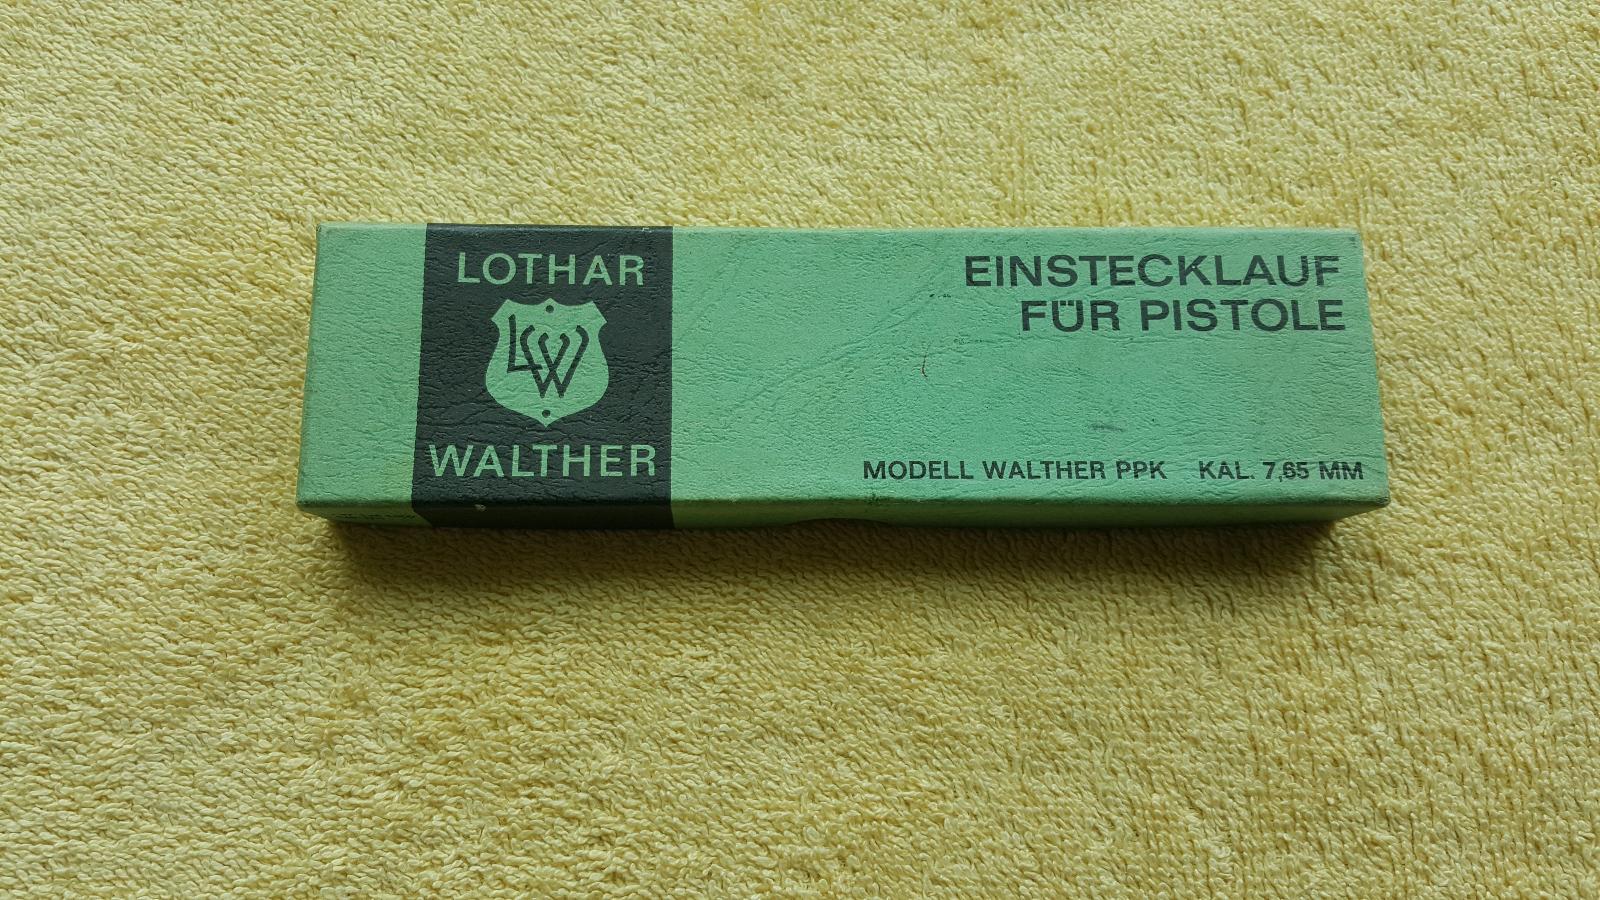 Flobert adapter Walther PPK a pod originál balení - Sběratelské zbraně